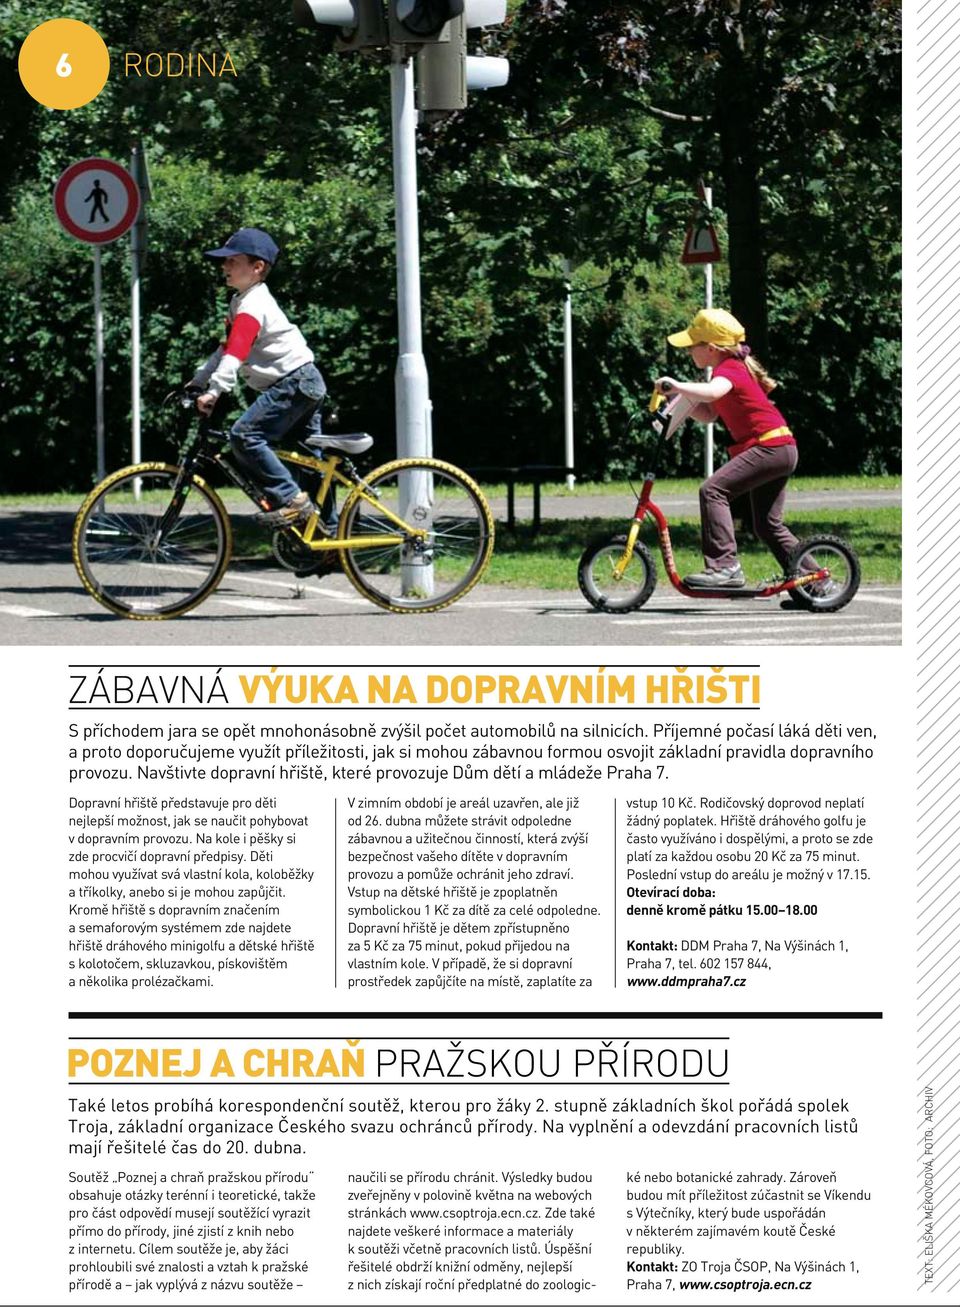 Navštivte dopravní hřiště, které provozuje Dům dětí a mládeže Praha 7. Dopravní hřiště představuje pro děti nejlepší možnost, jak se naučit pohybovat v dopravním provozu.